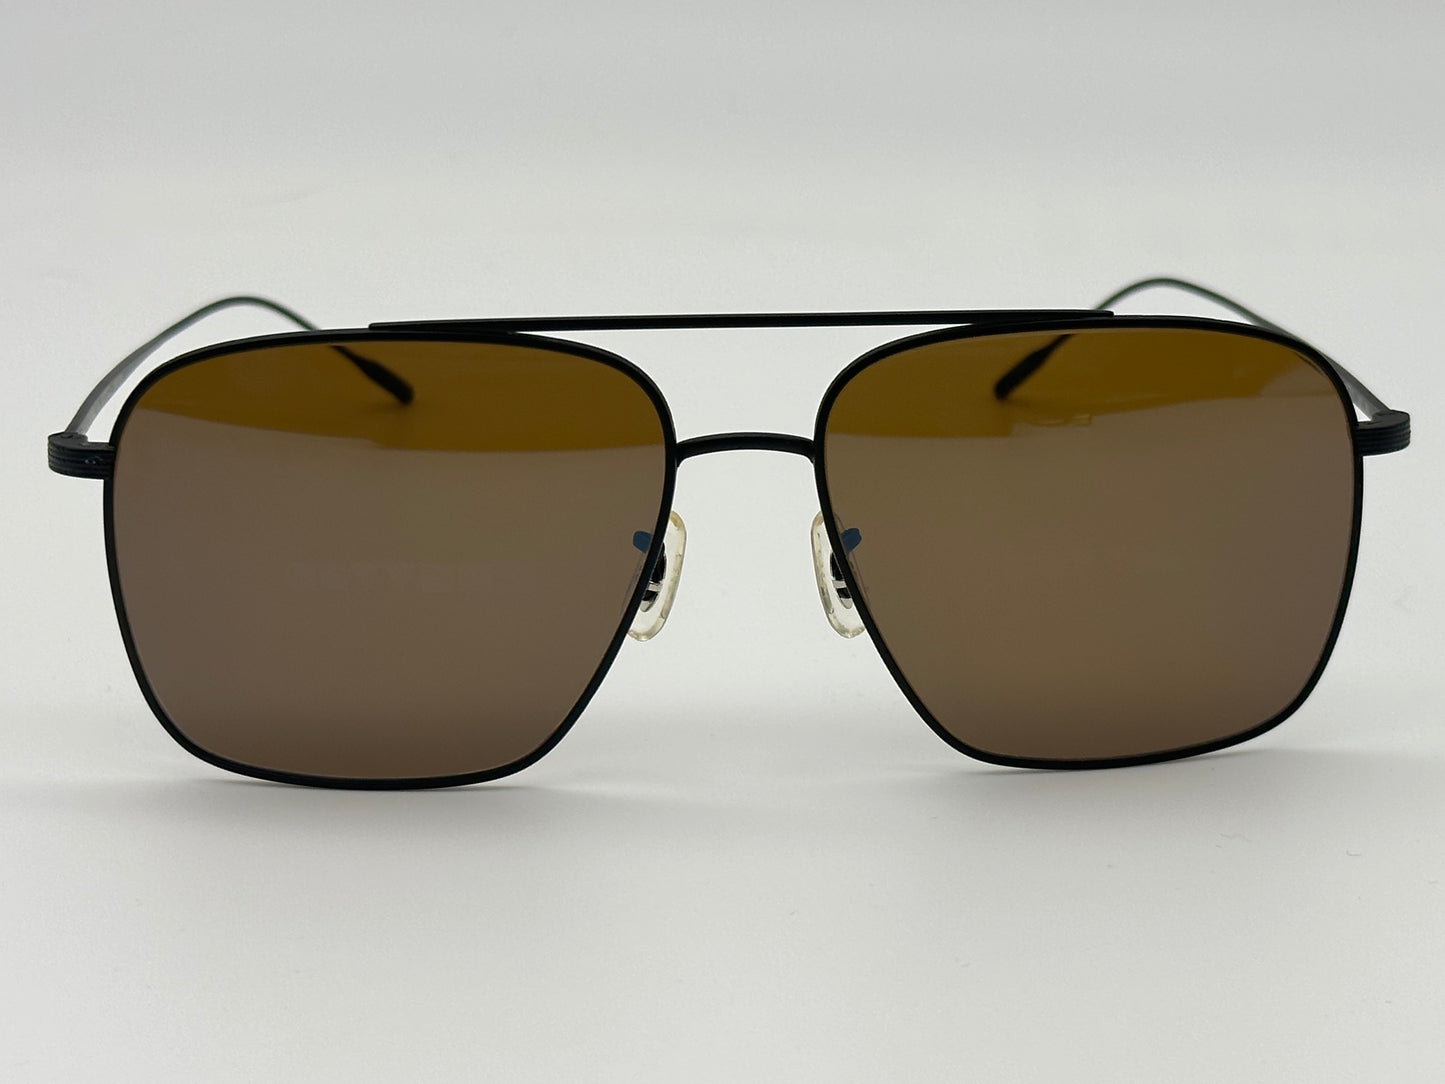 Oliver Peoples Dresner 56mm OV 1320 ST  5062G8 Matte Black/Cognac Mirrored Sunglasses Japan NEW